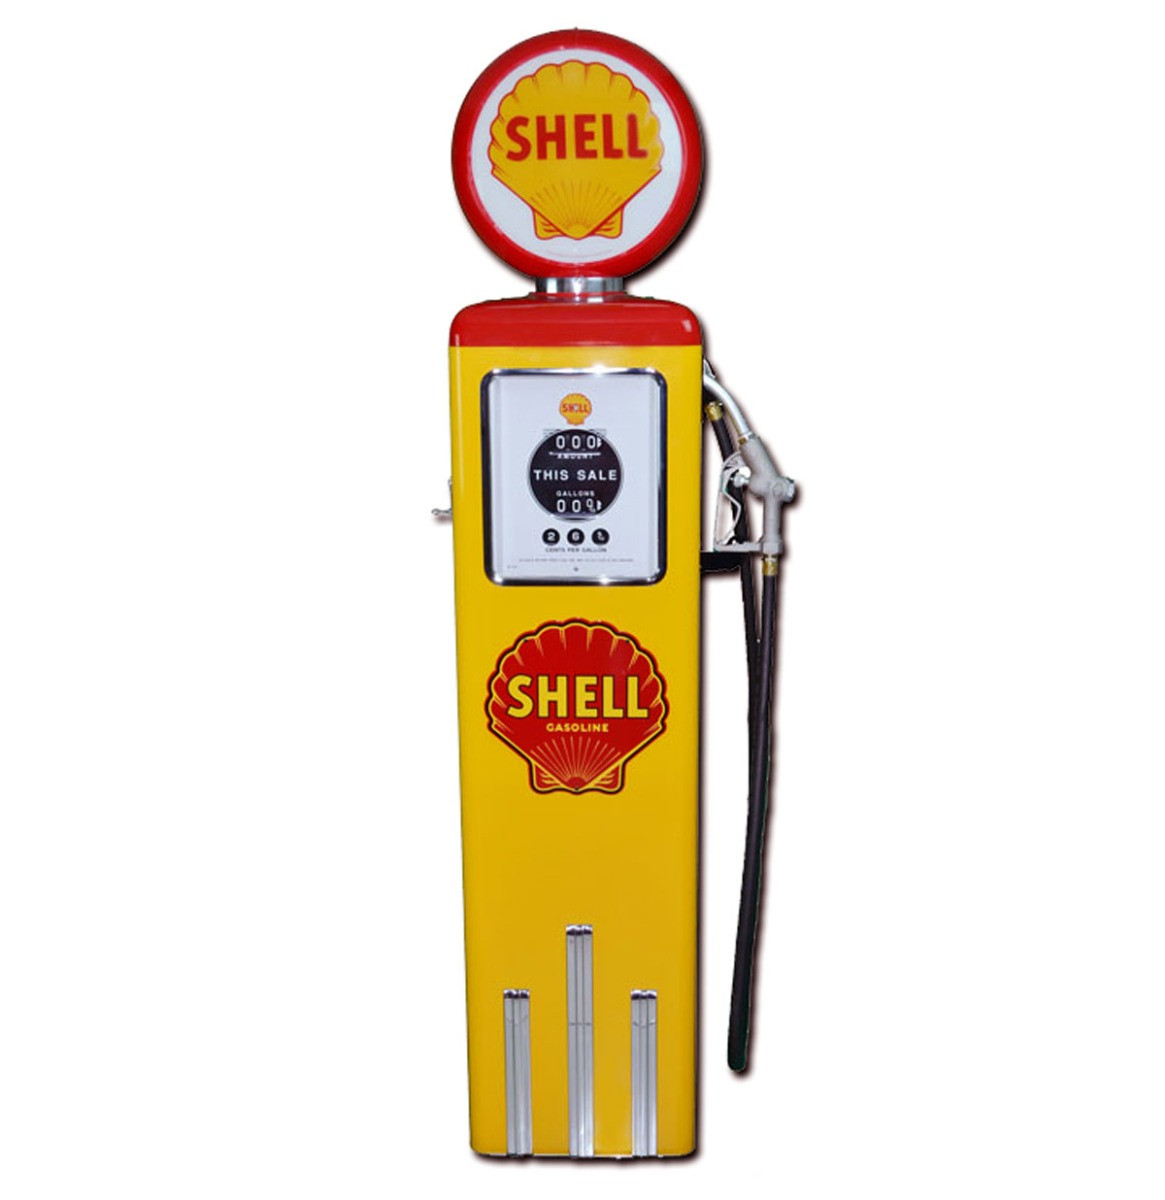 Shell 8 Ball Benzinepomp Zonder Voet Rood & Geel Reproductie